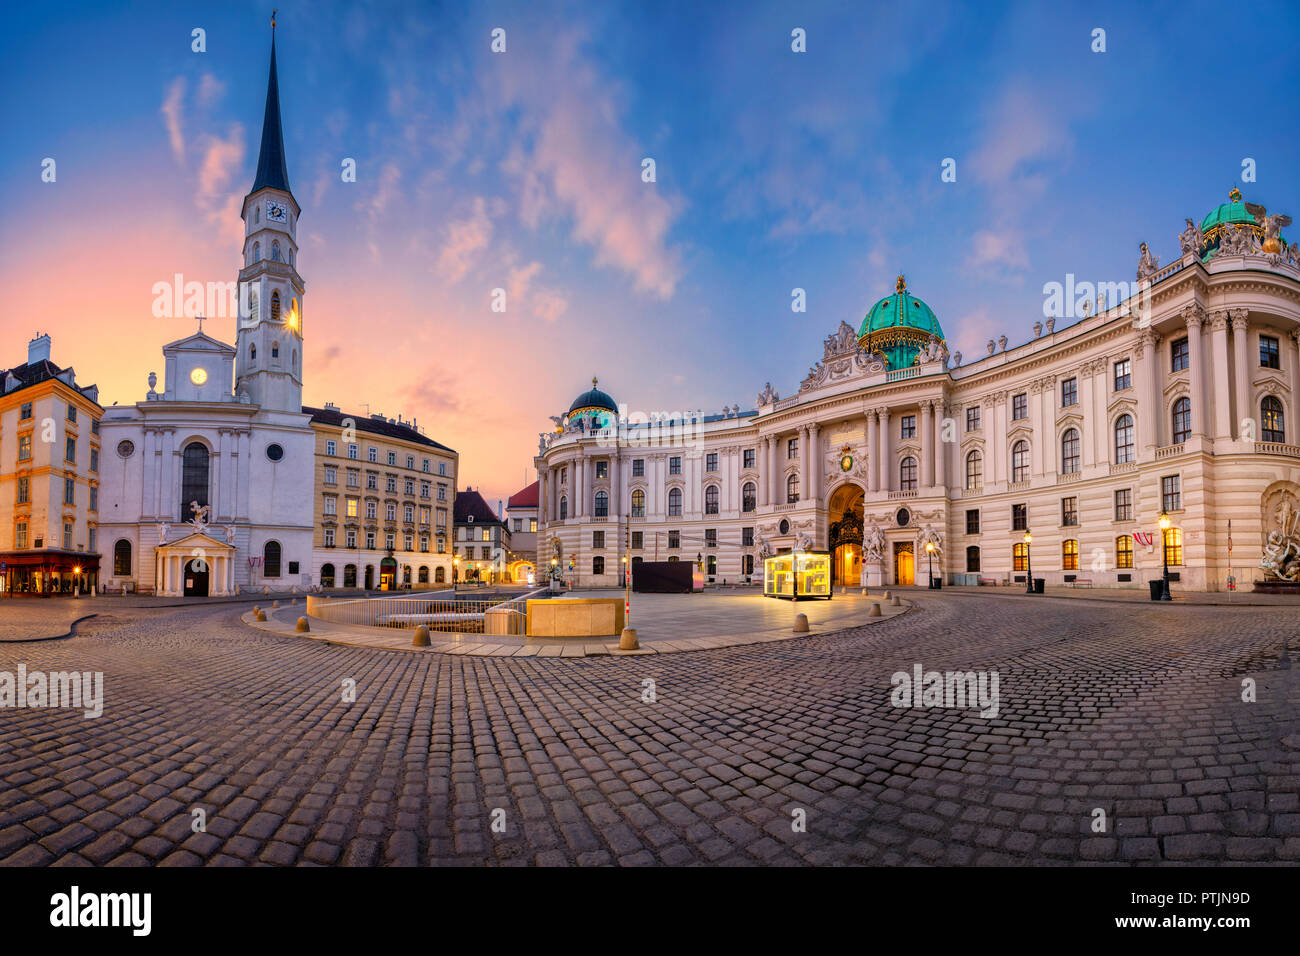 Vienna, Austria. Immagine di panorama urbano di Vienna, in Austria con la Parrocchia di San Michele e la chiesa si trova a San Michele Square durante il sunrise. Foto Stock